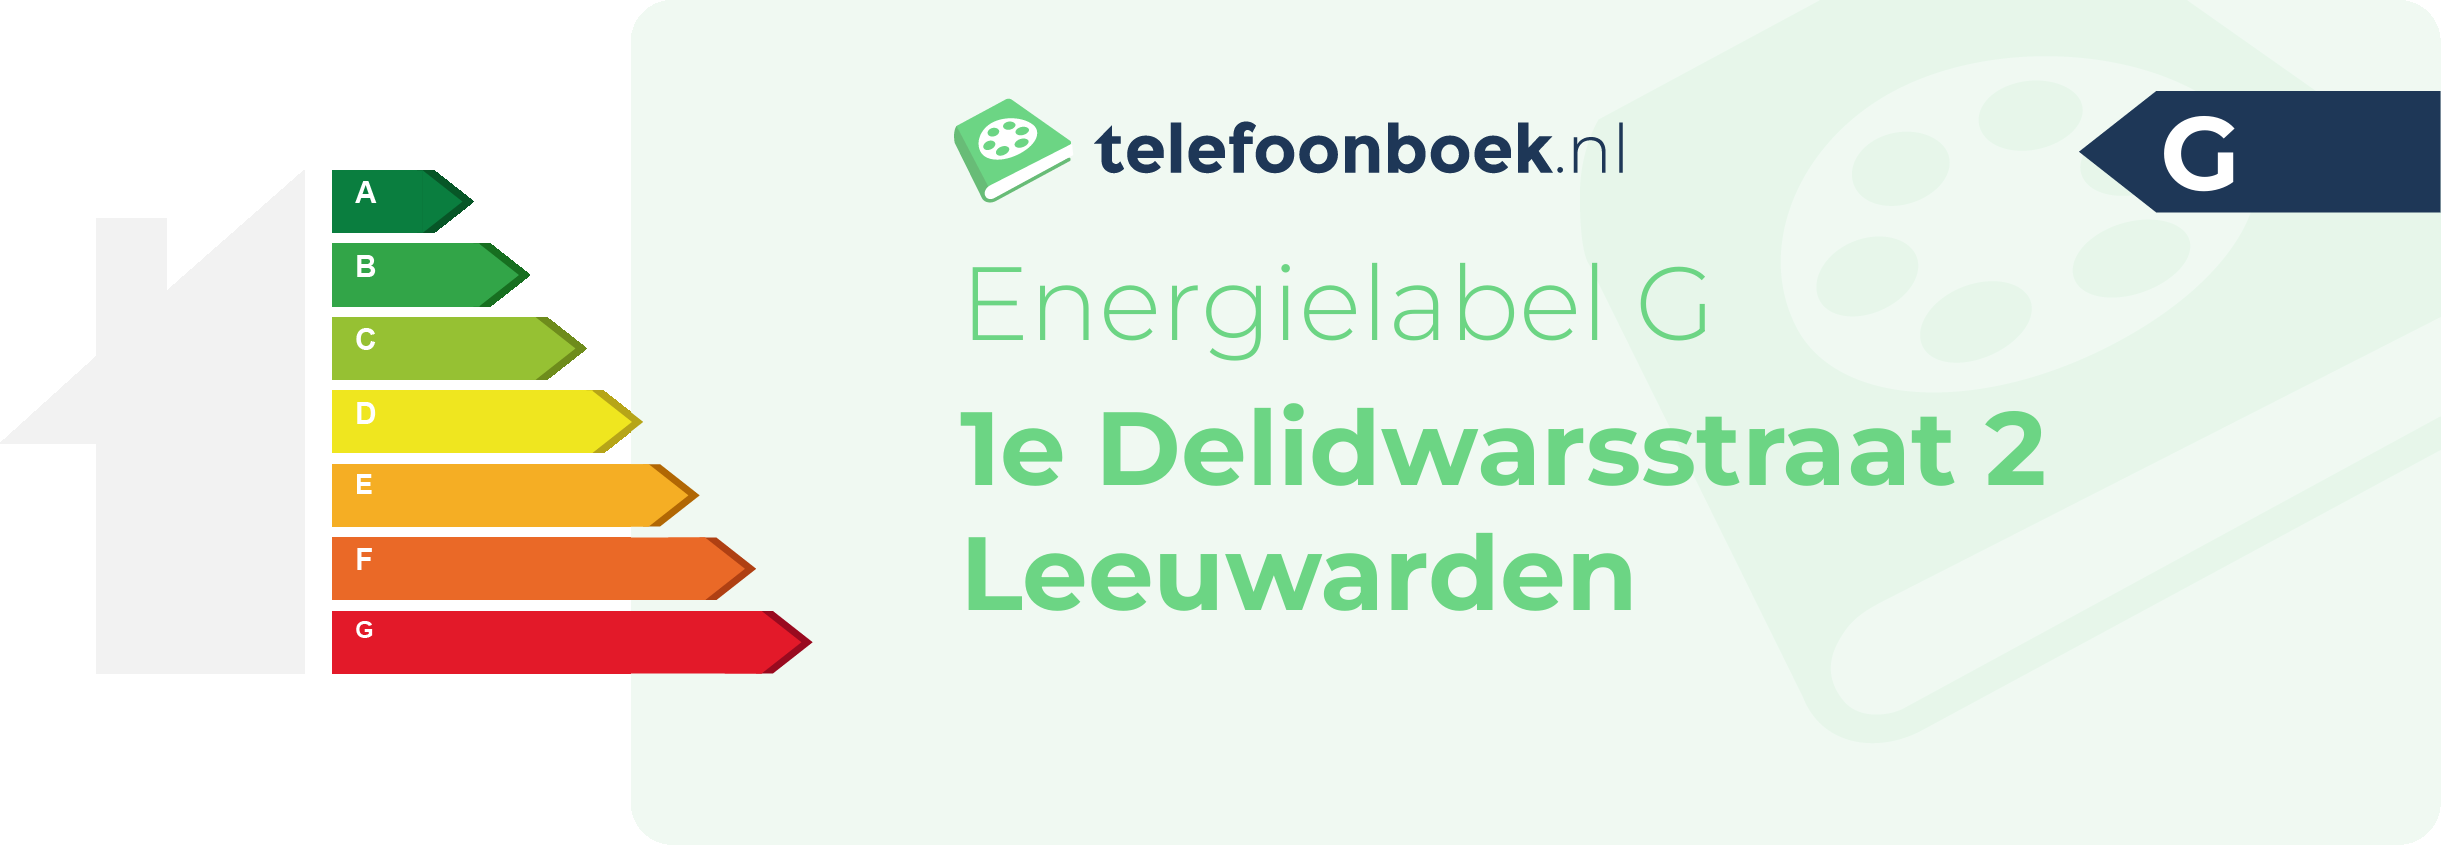 Energielabel 1e Delidwarsstraat 2 Leeuwarden